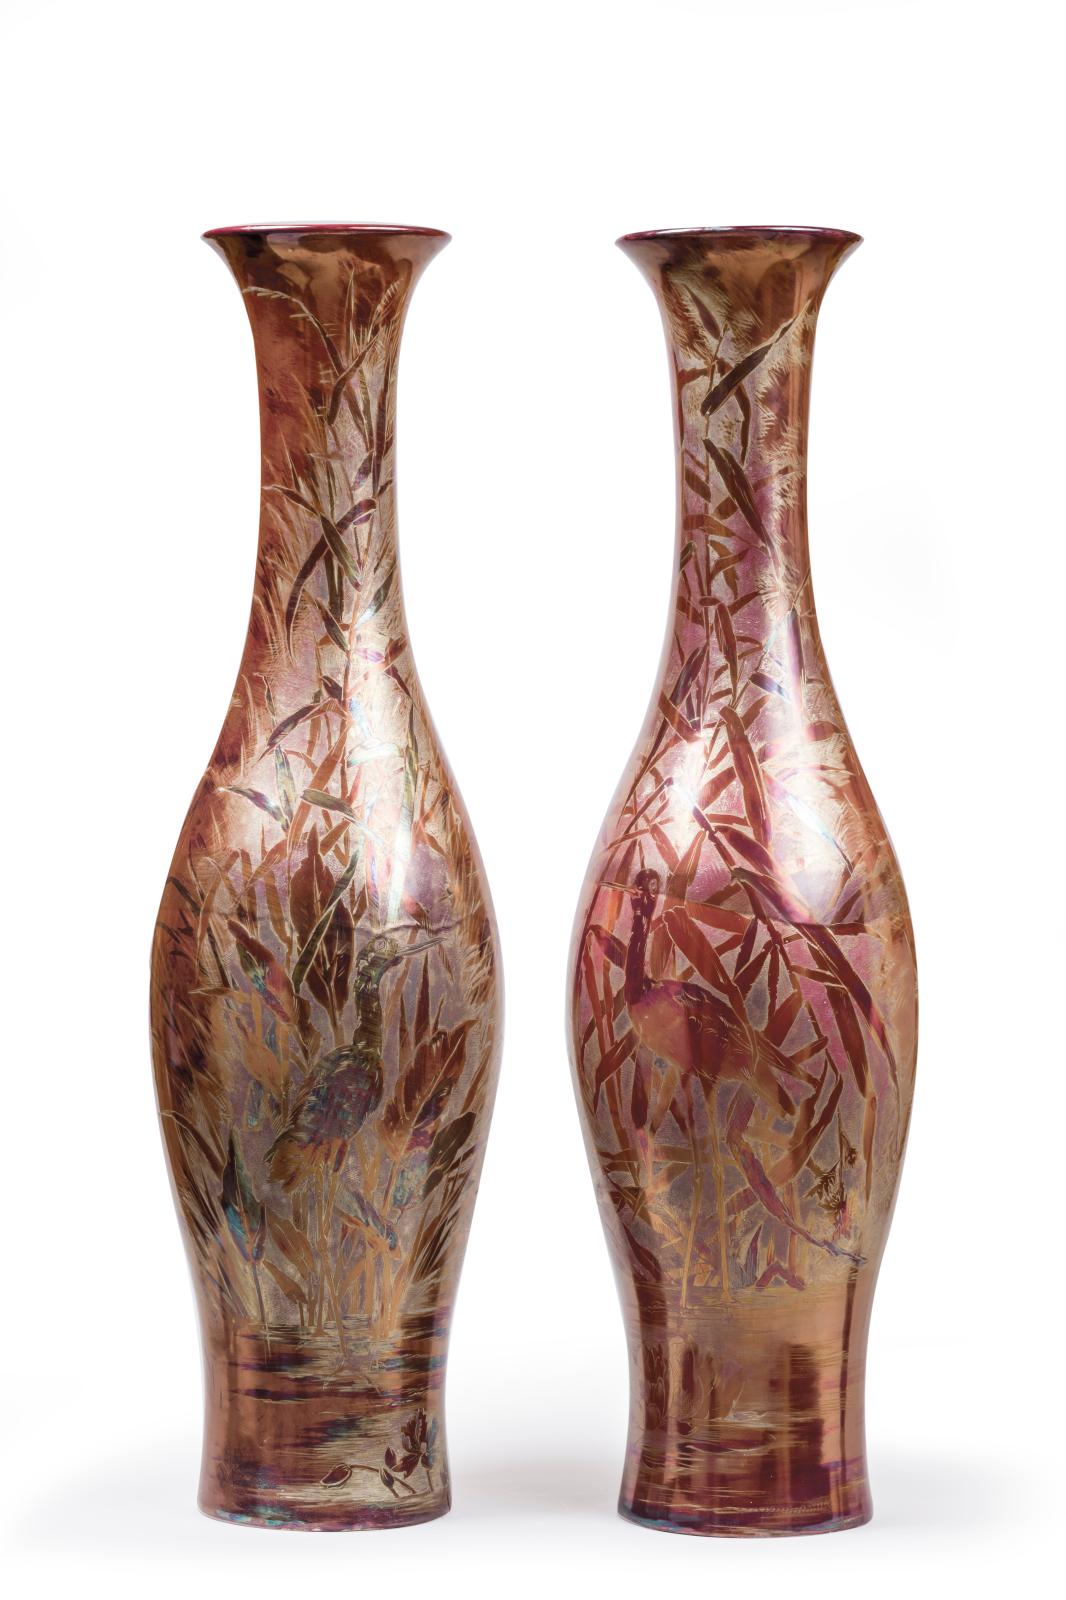 Paire de vases bouteille, vers 1910-1920, en céramique à lustre métallique à décor aux hérons et aux roseaux, marque de Gien olographe, h. 99, diam. 2